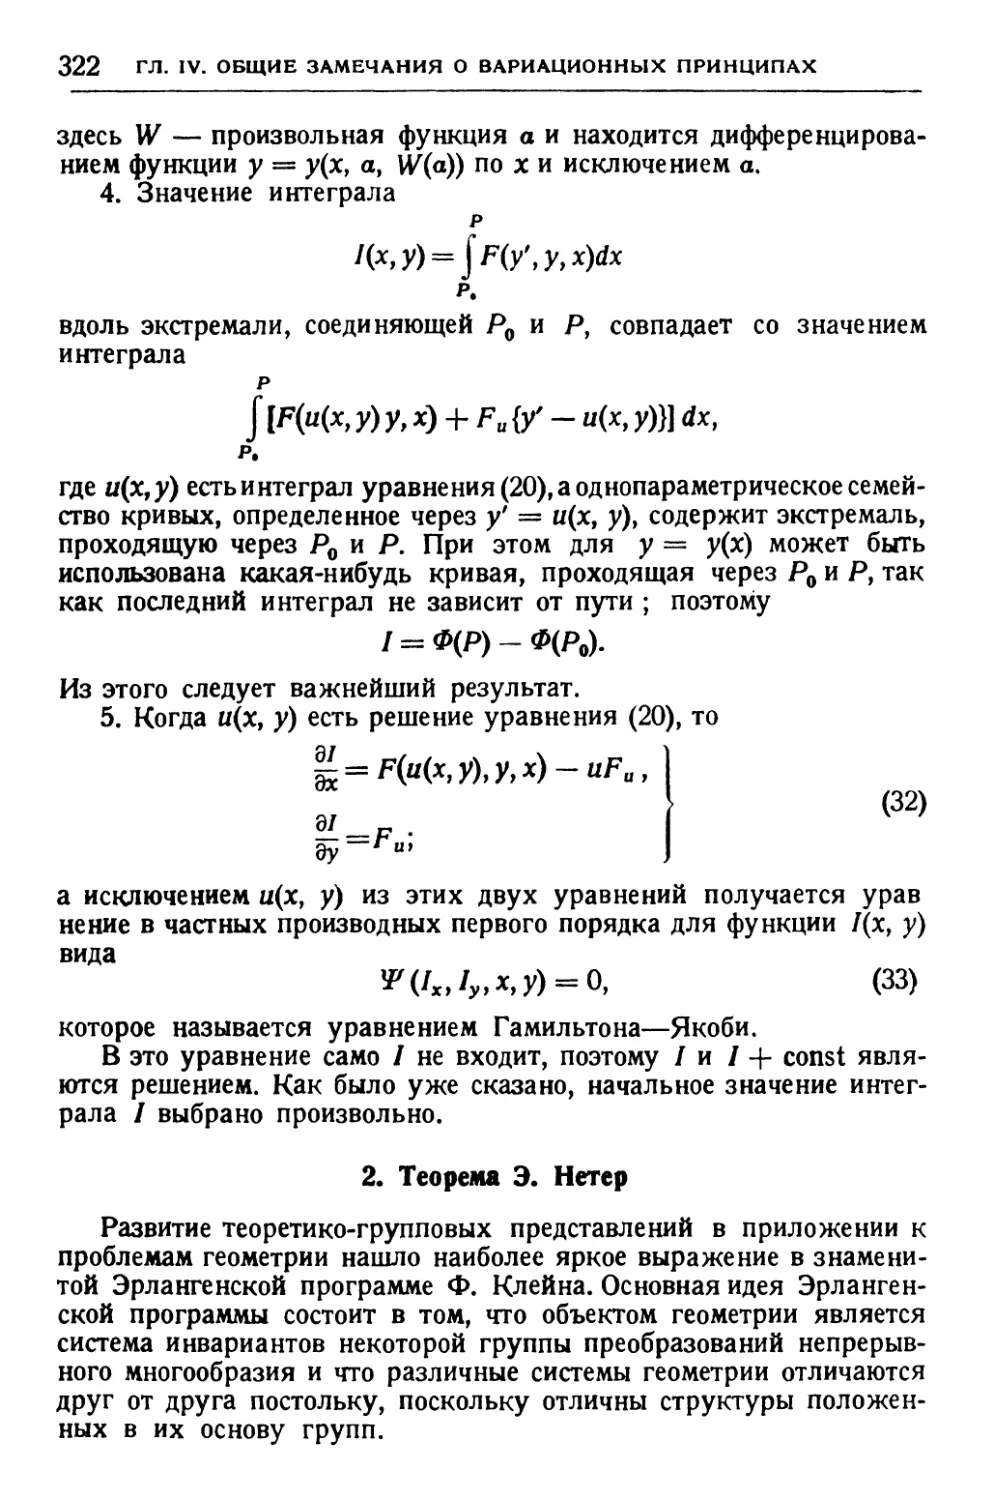 2. Теорема Э. Нетер